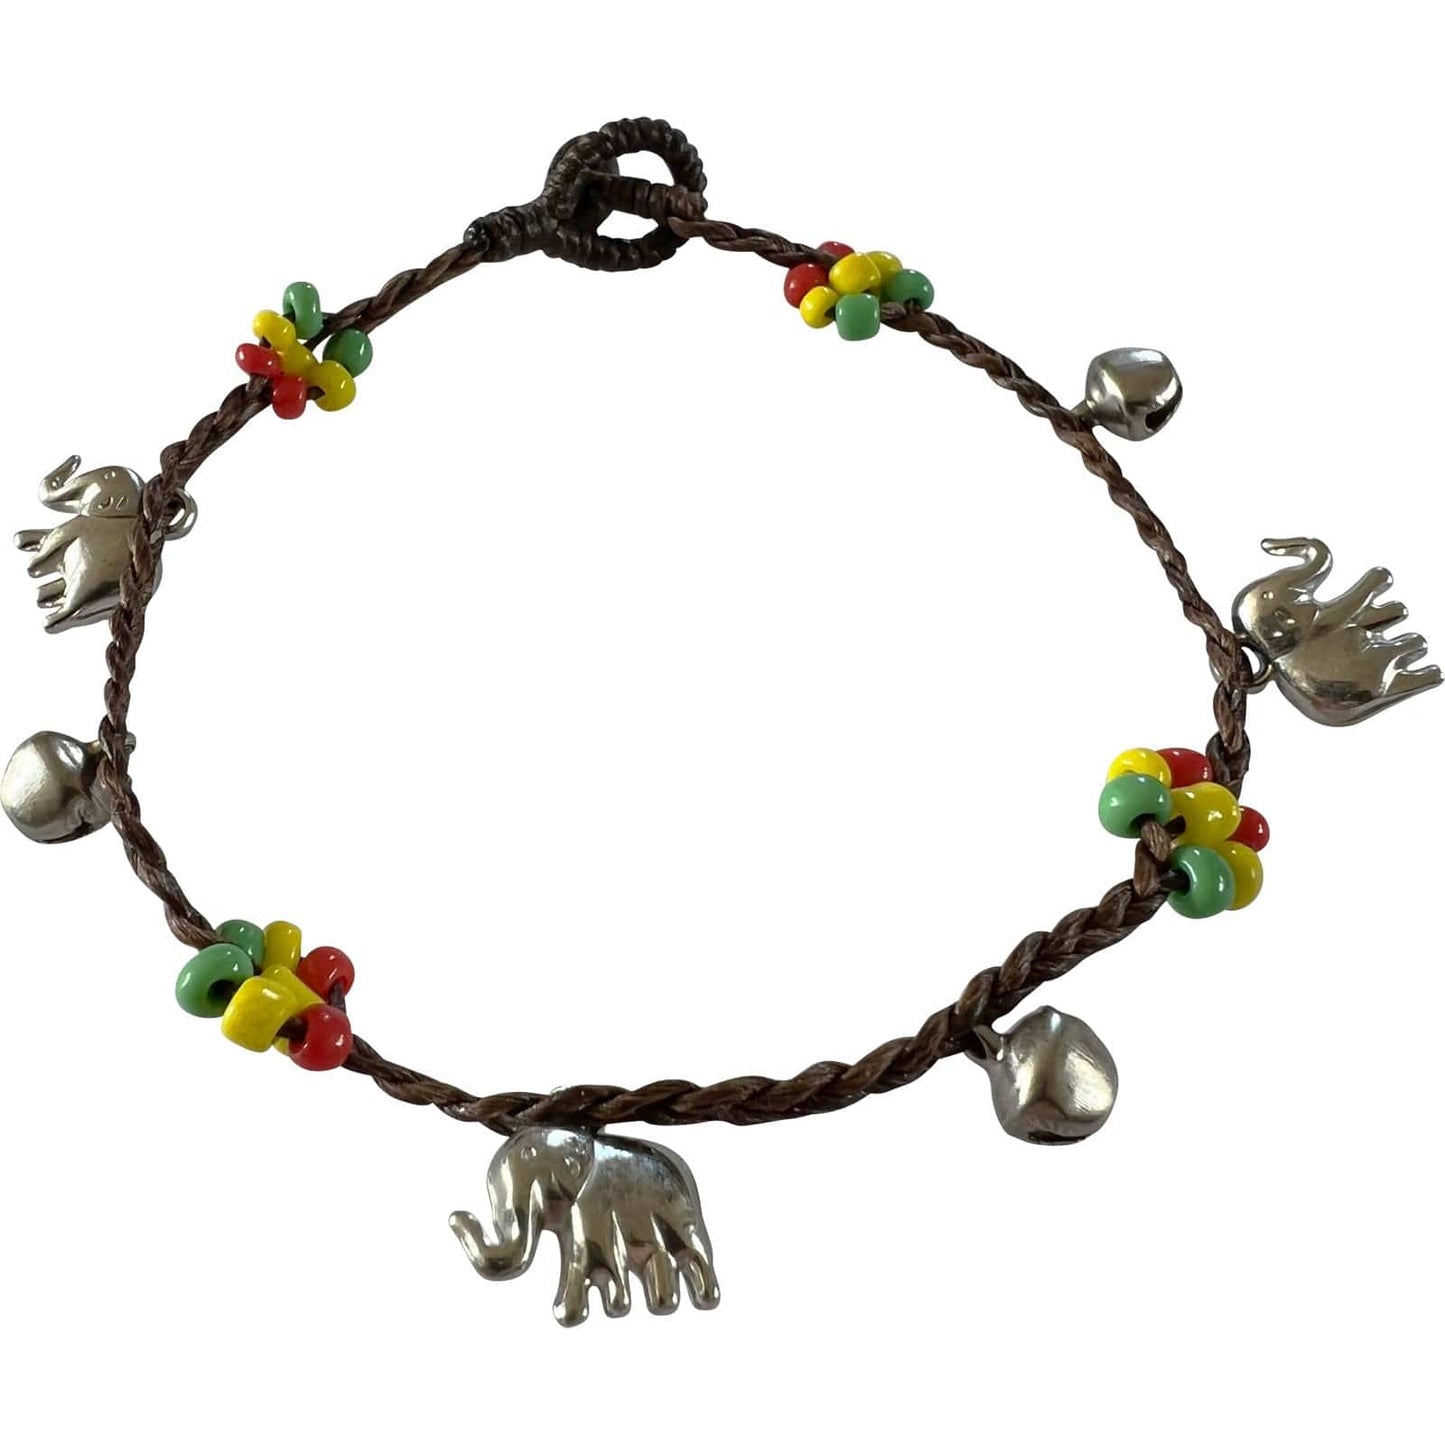 Rasta Flower Elephant Beads Ankle Bracelet Foot Anklet Chain Reggae Jewellery